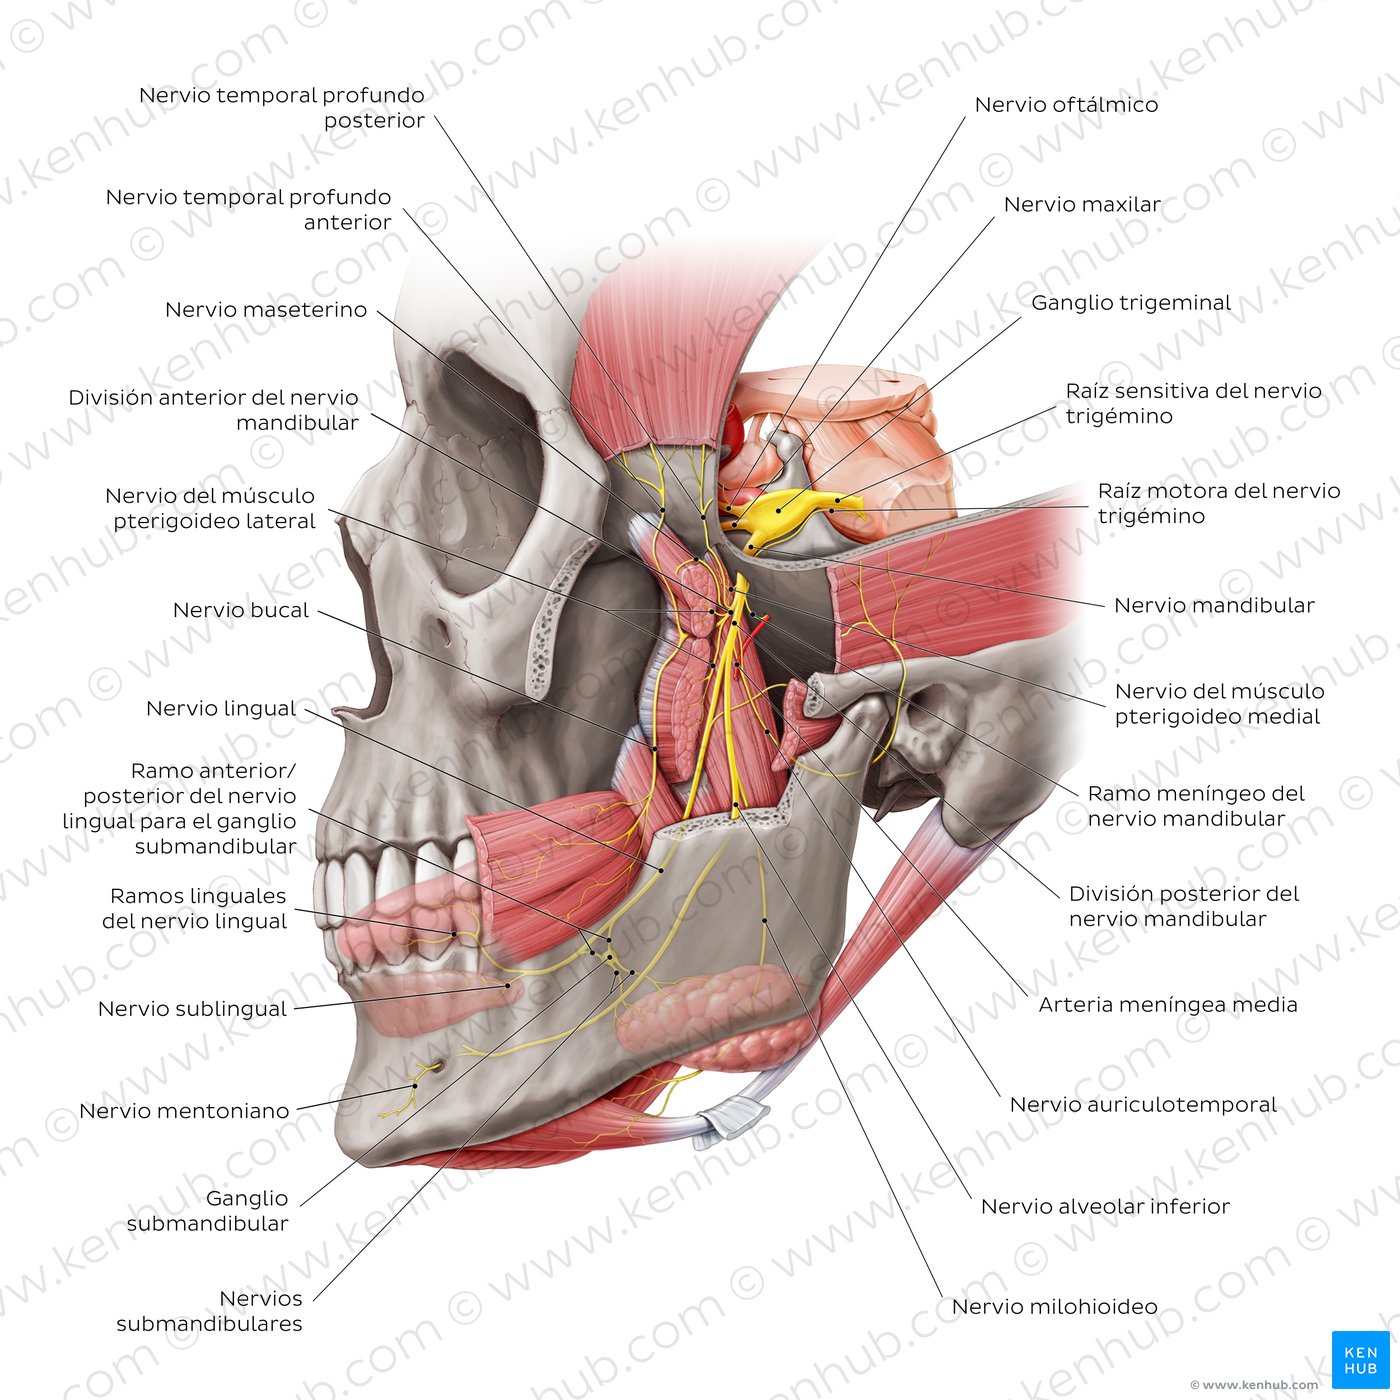 División mandibular del nervio trigémino (V3)